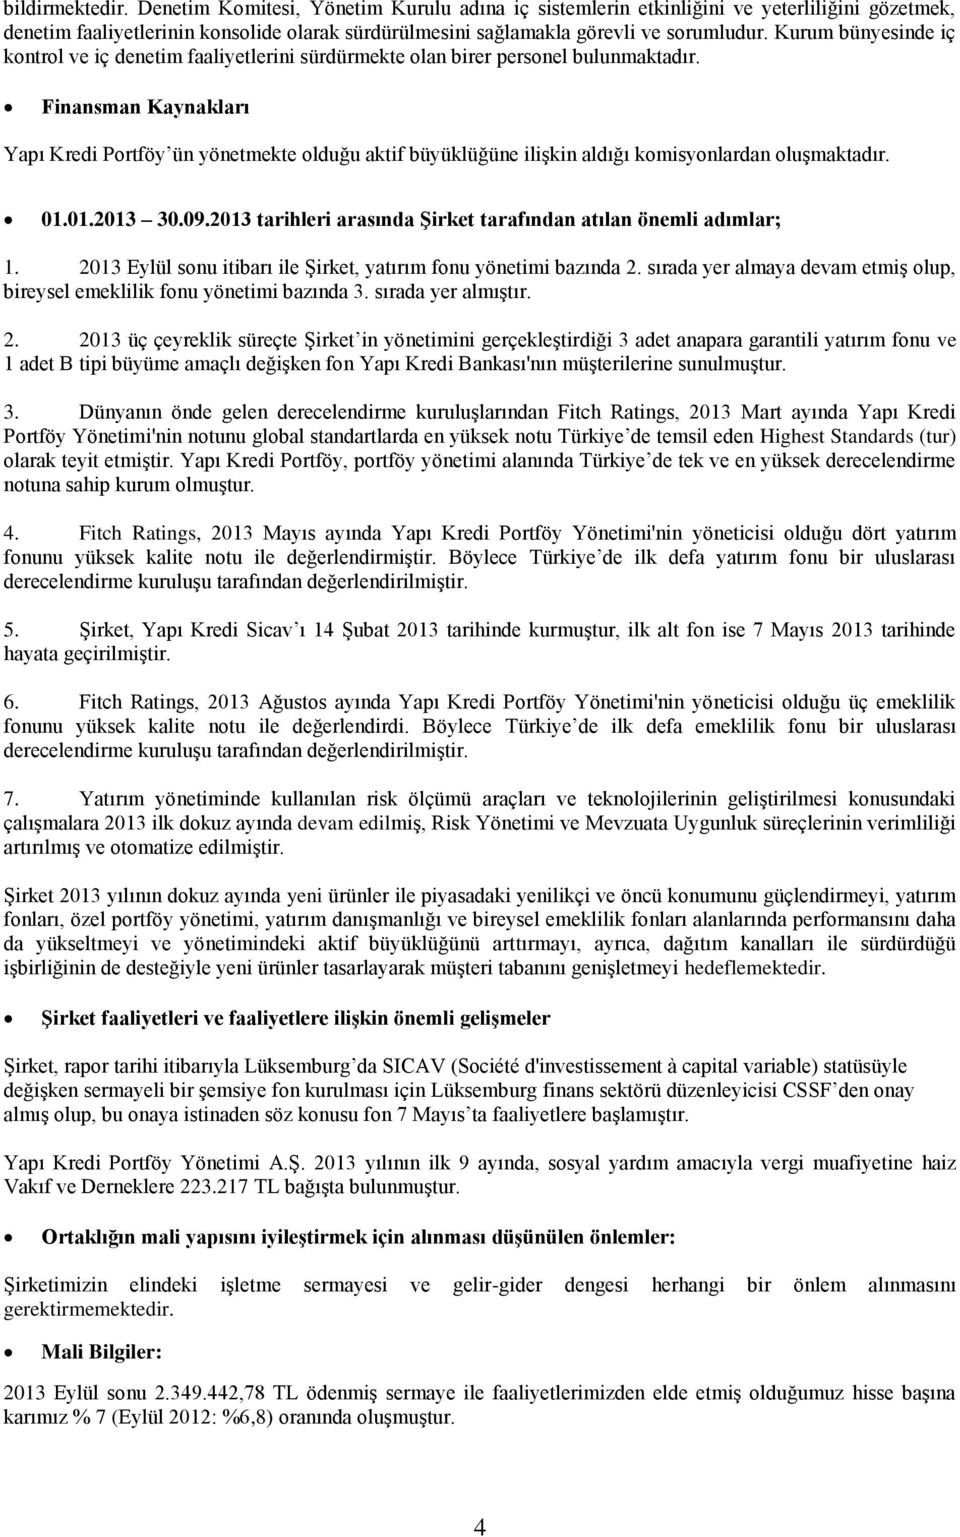 Finansman Kaynakları Yapı Kredi Portföy ün yönetmekte olduğu aktif büyüklüğüne ilişkin aldığı komisyonlardan oluşmaktadır. 01.01.2013 30.09.